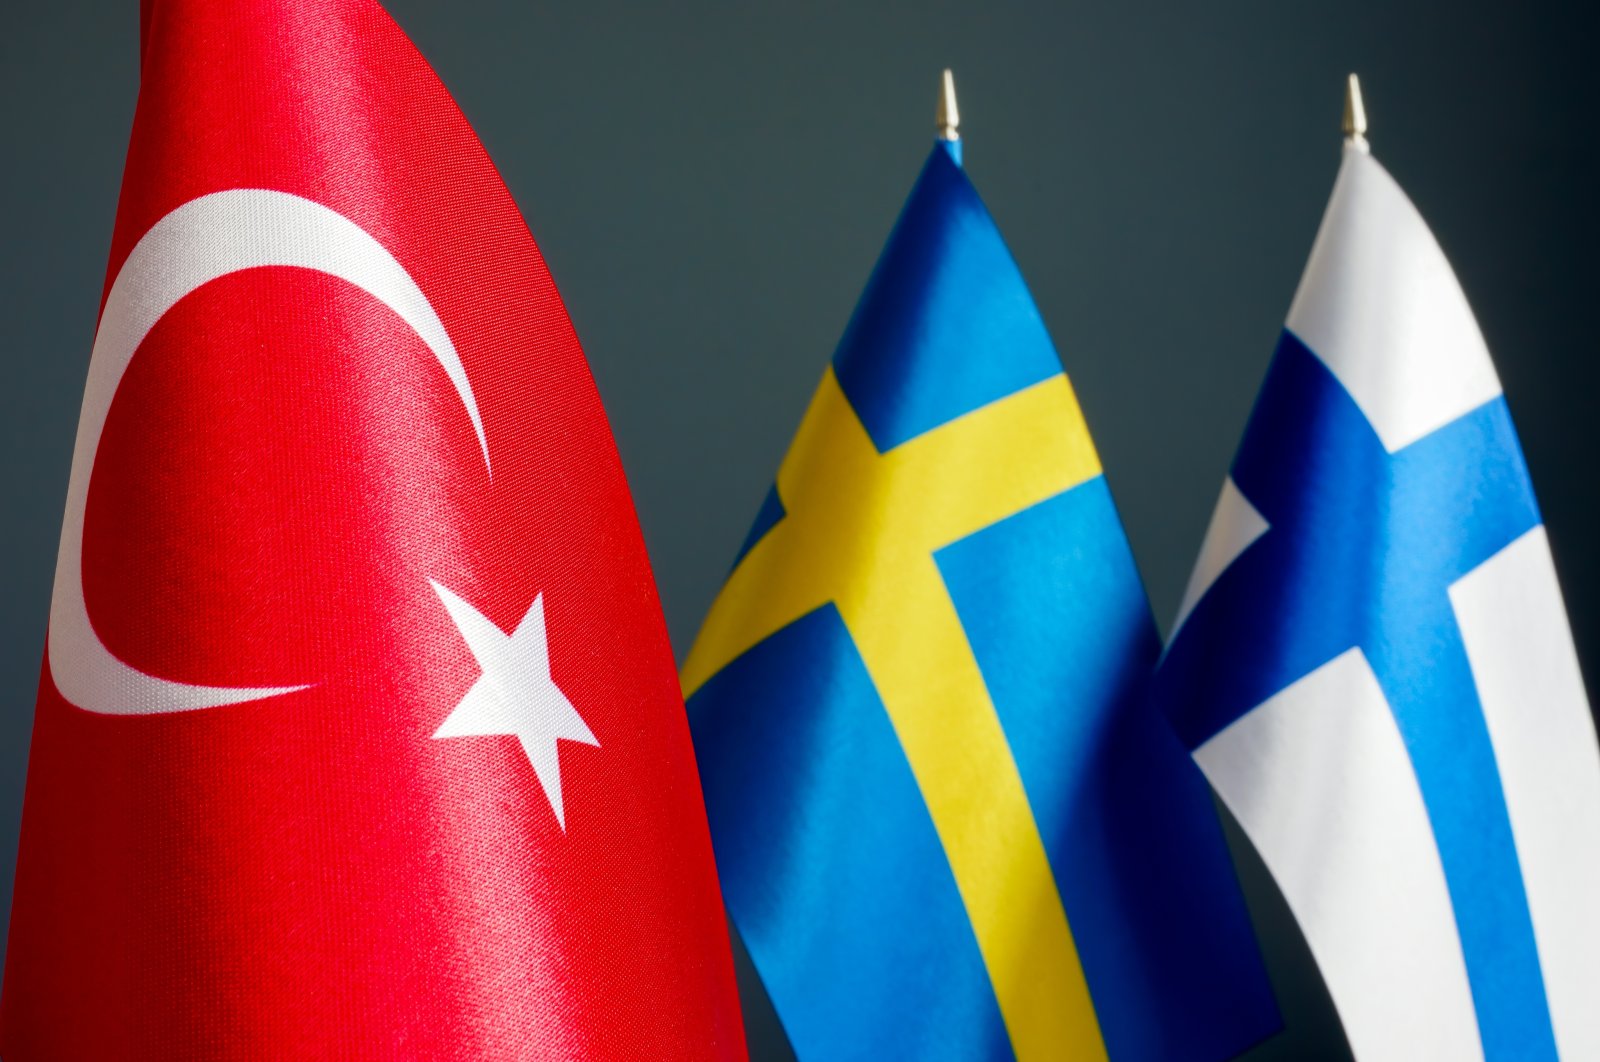 芬兰瑞典土耳其三方会议 讨论反恐安全议题